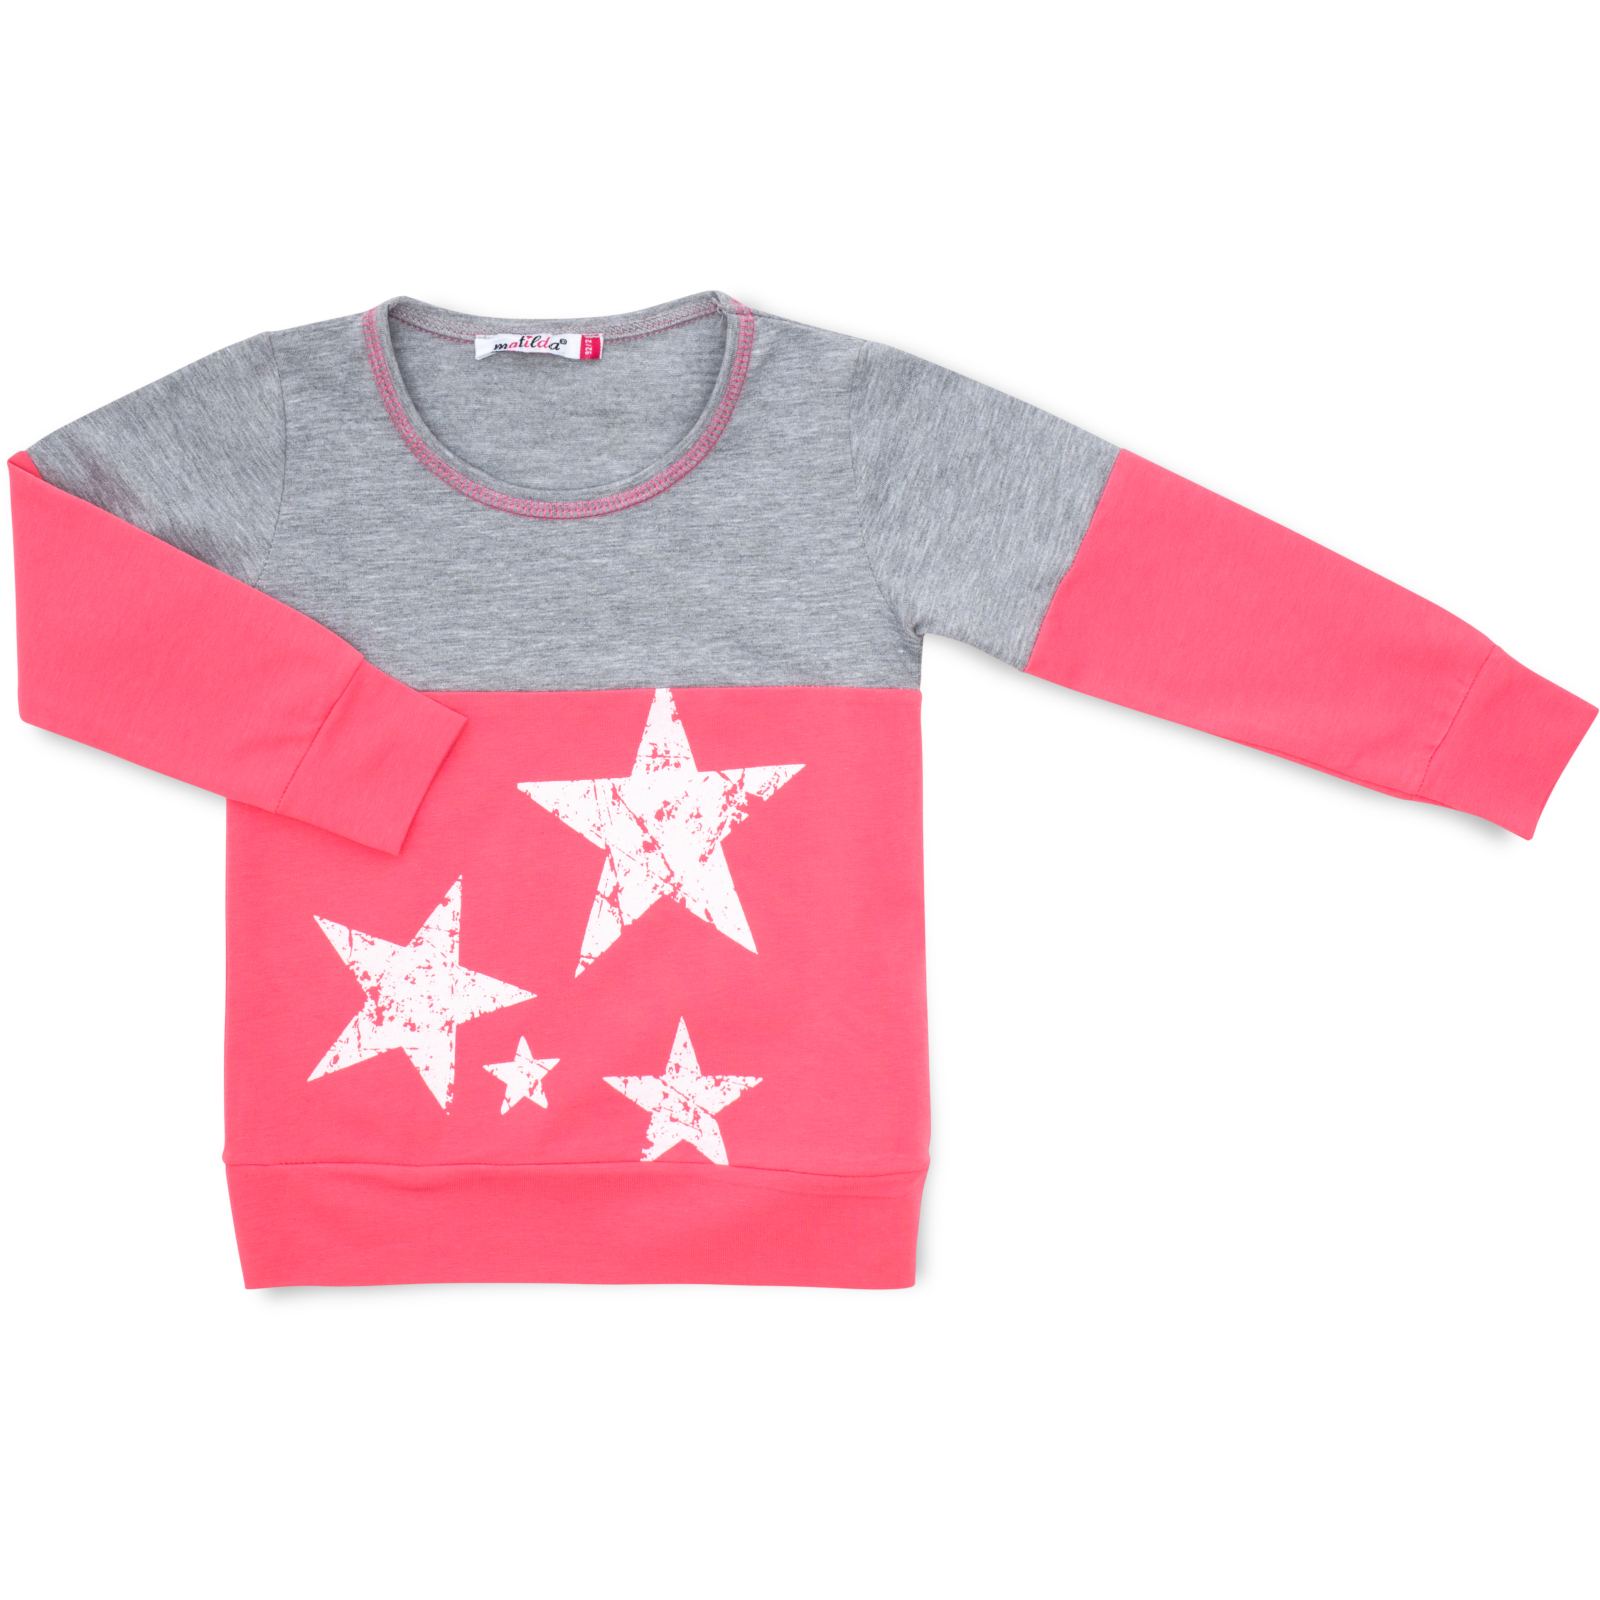 Пижама Matilda со звездочками (7167-110G-pink) изображение 2